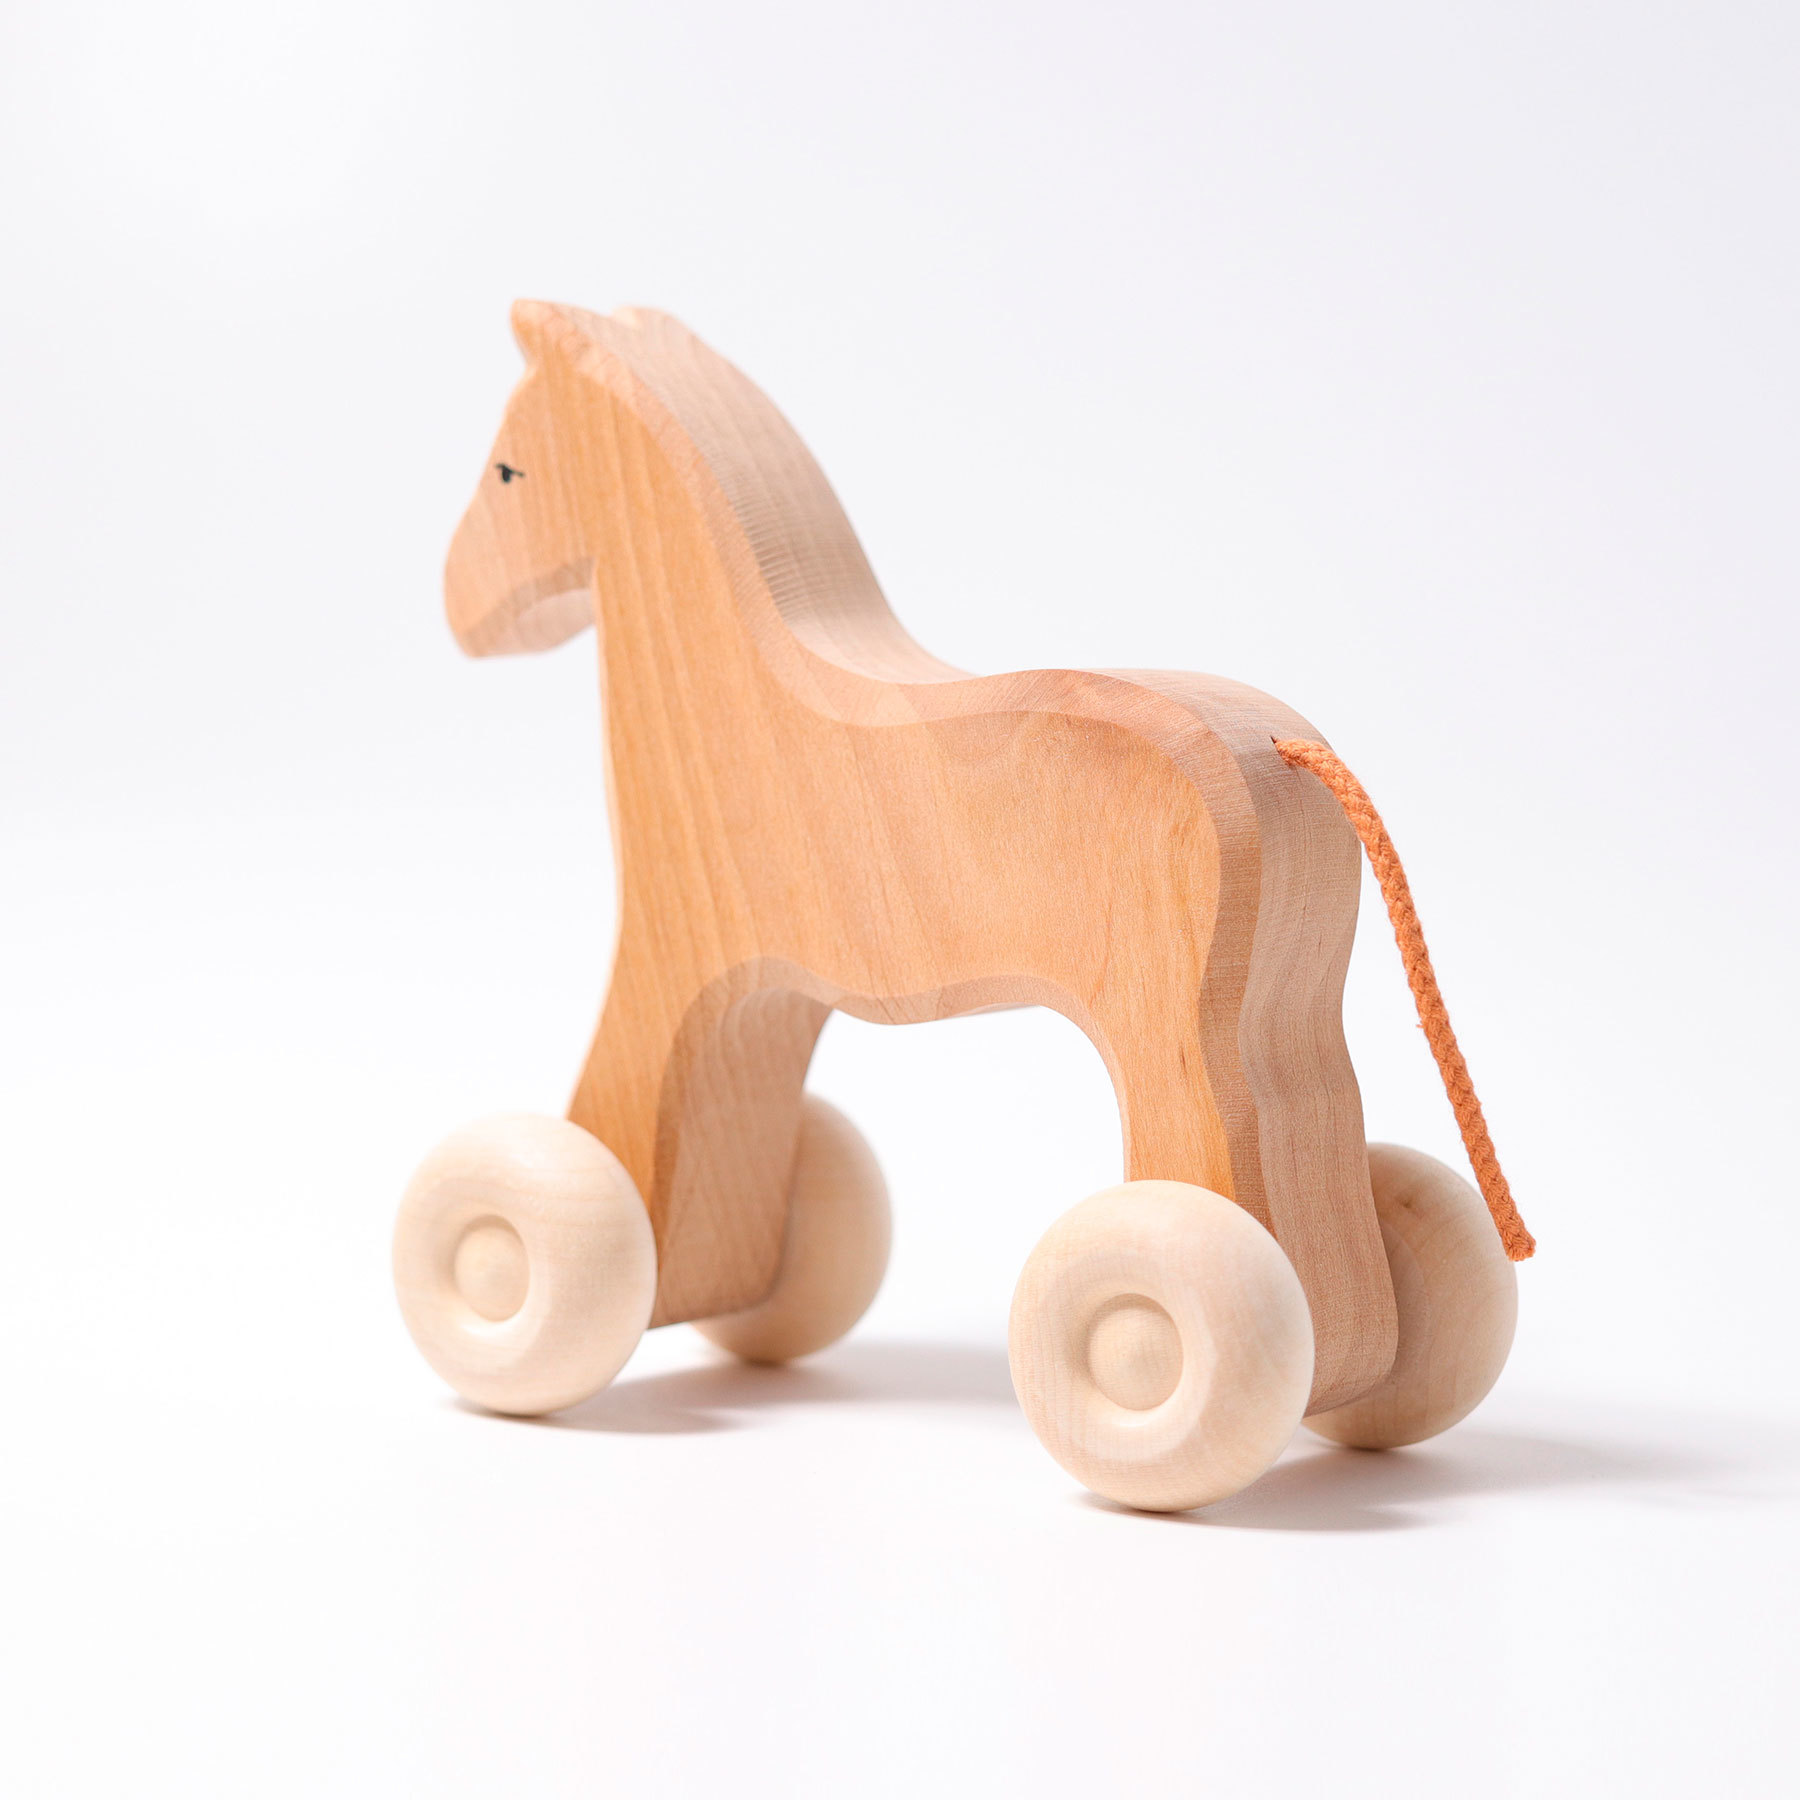 Лошадка для 6 лет. Игрушка лошадь большая. Лонг Хорс игрушка. Лошадь большая в полный рост из дерева самодельная. Гримм коня.